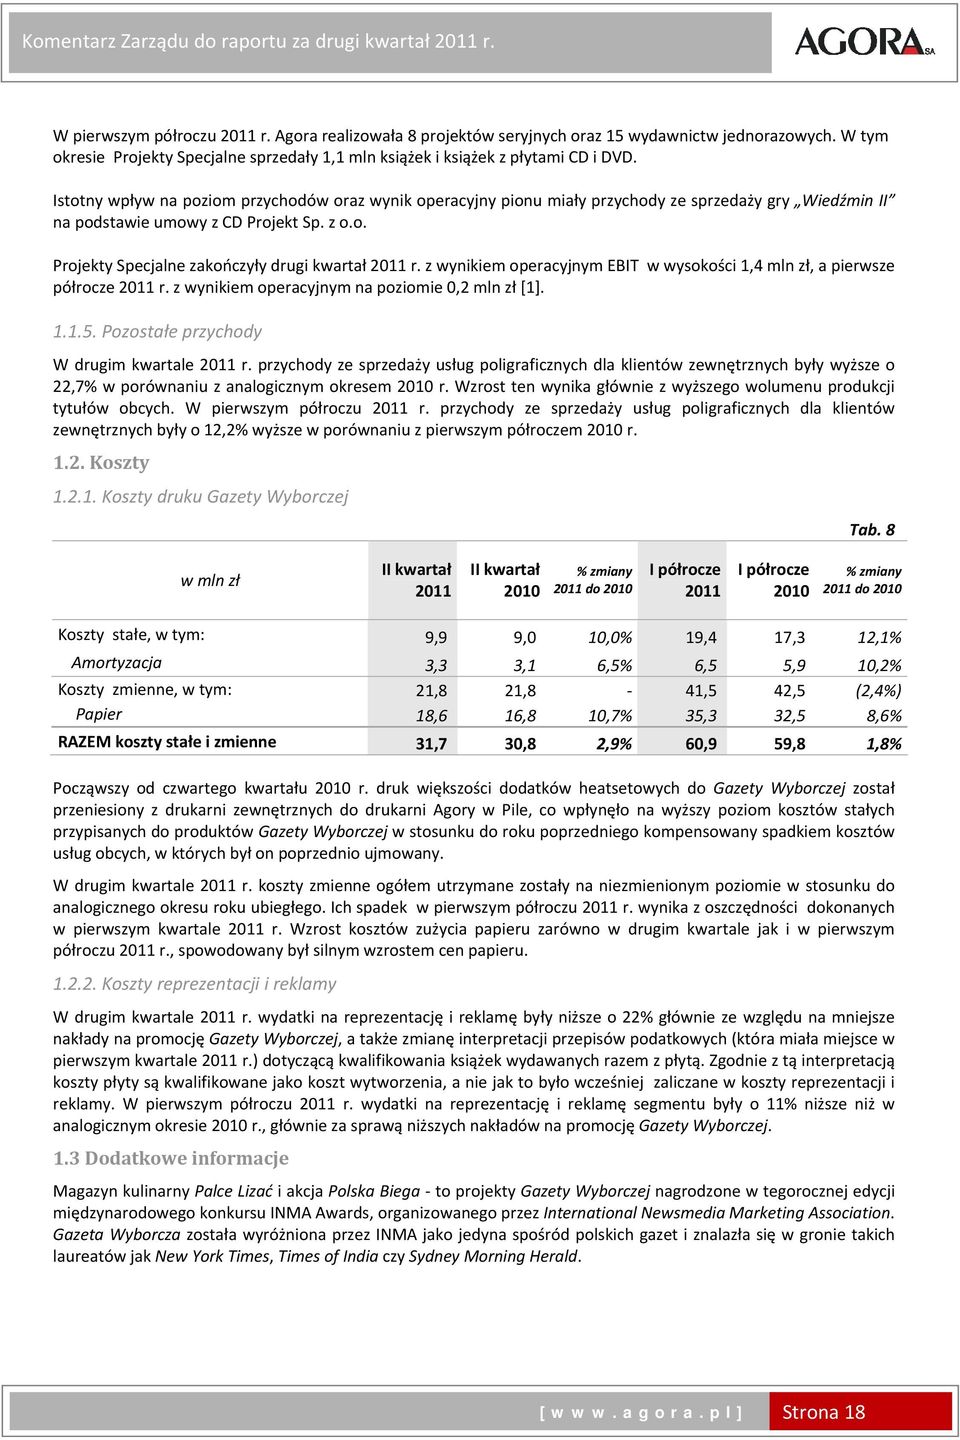 Istotny wpływ na poziom przychodów oraz wynik operacyjny pionu miały przychody ze sprzedaży gry Wiedźmin II na podstawie umowy z CD Projekt Sp. z o.o. Projekty Specjalne zakończyły drugi kwartał r.